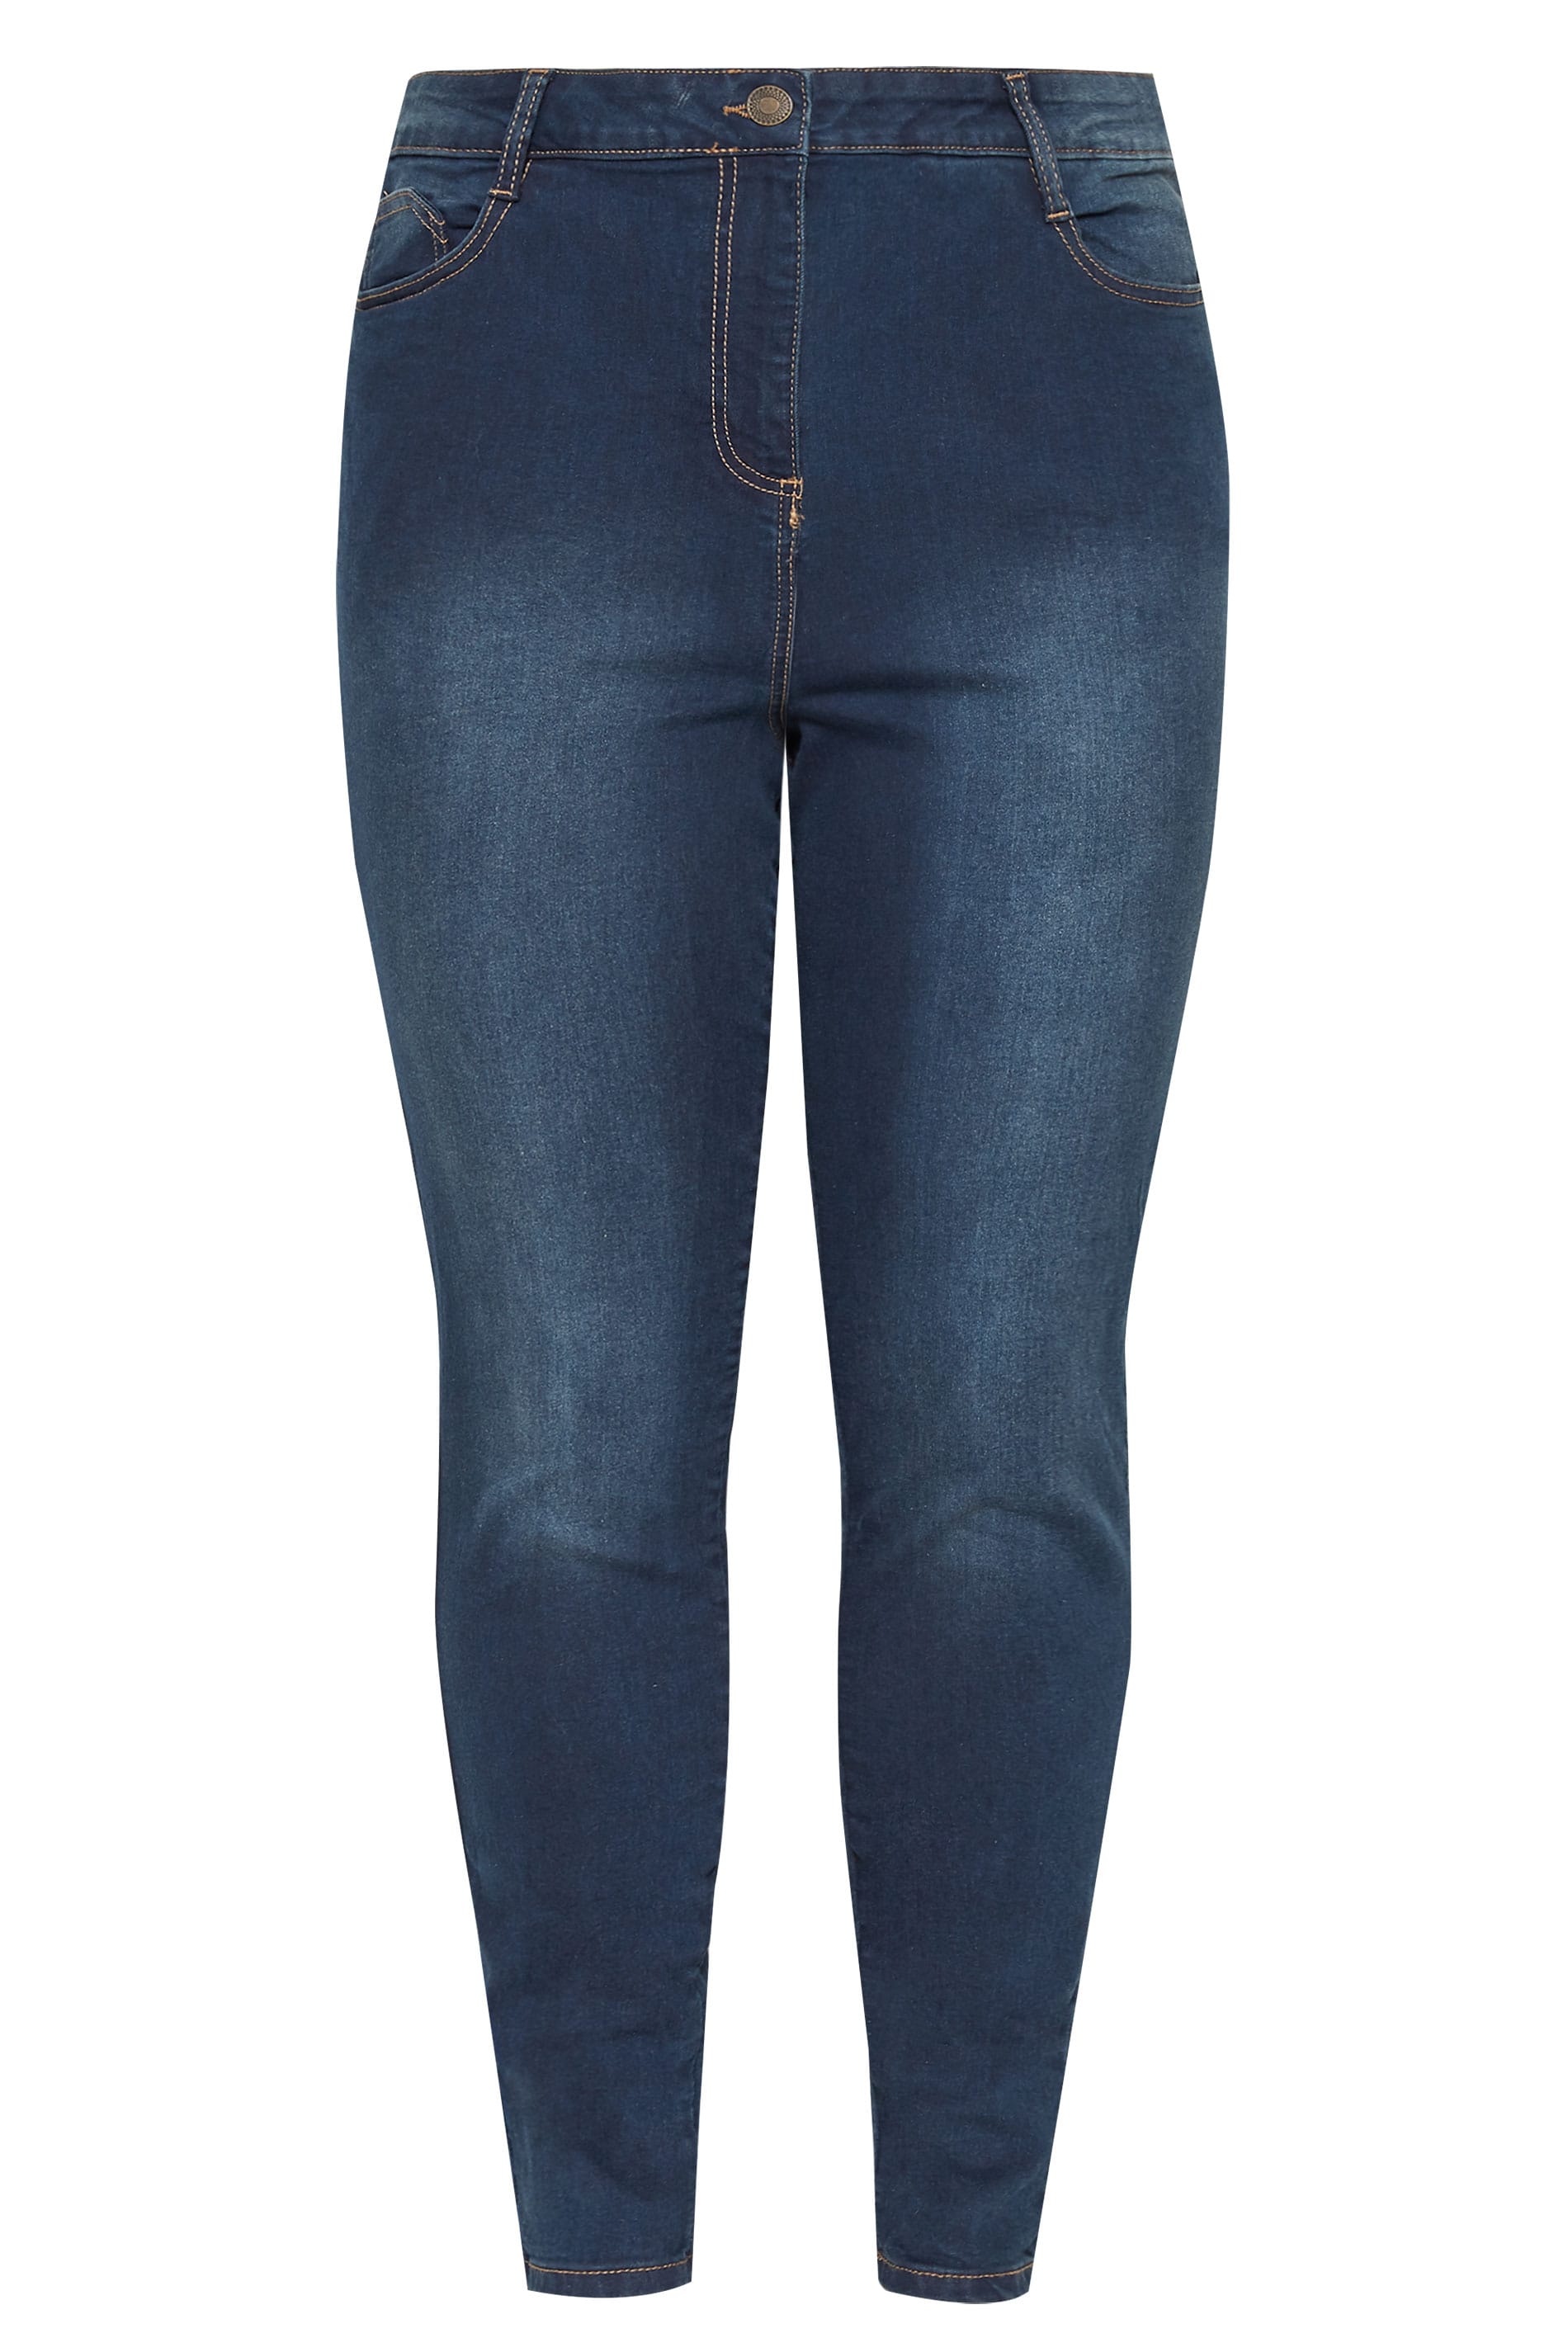 Plus Size Indigo Blue Skinny Stretch AVA Jeans